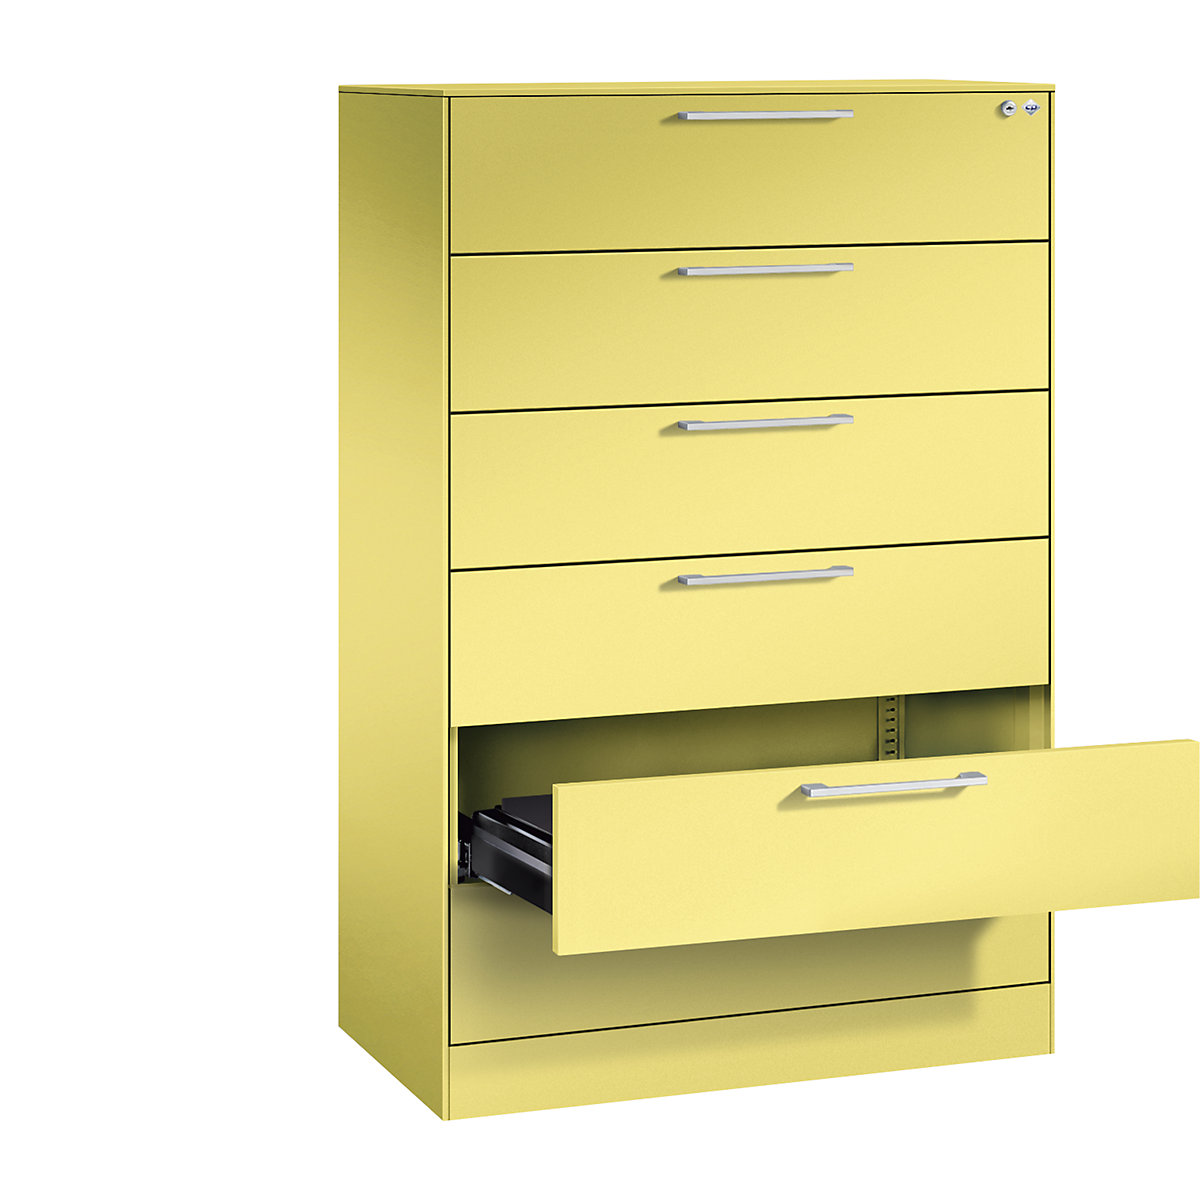 Fișier ASISTO – C+P, înălțime 1292 mm, cu 6 sertare, DIN A5 orizontal, galben sulf/galben sulf-20